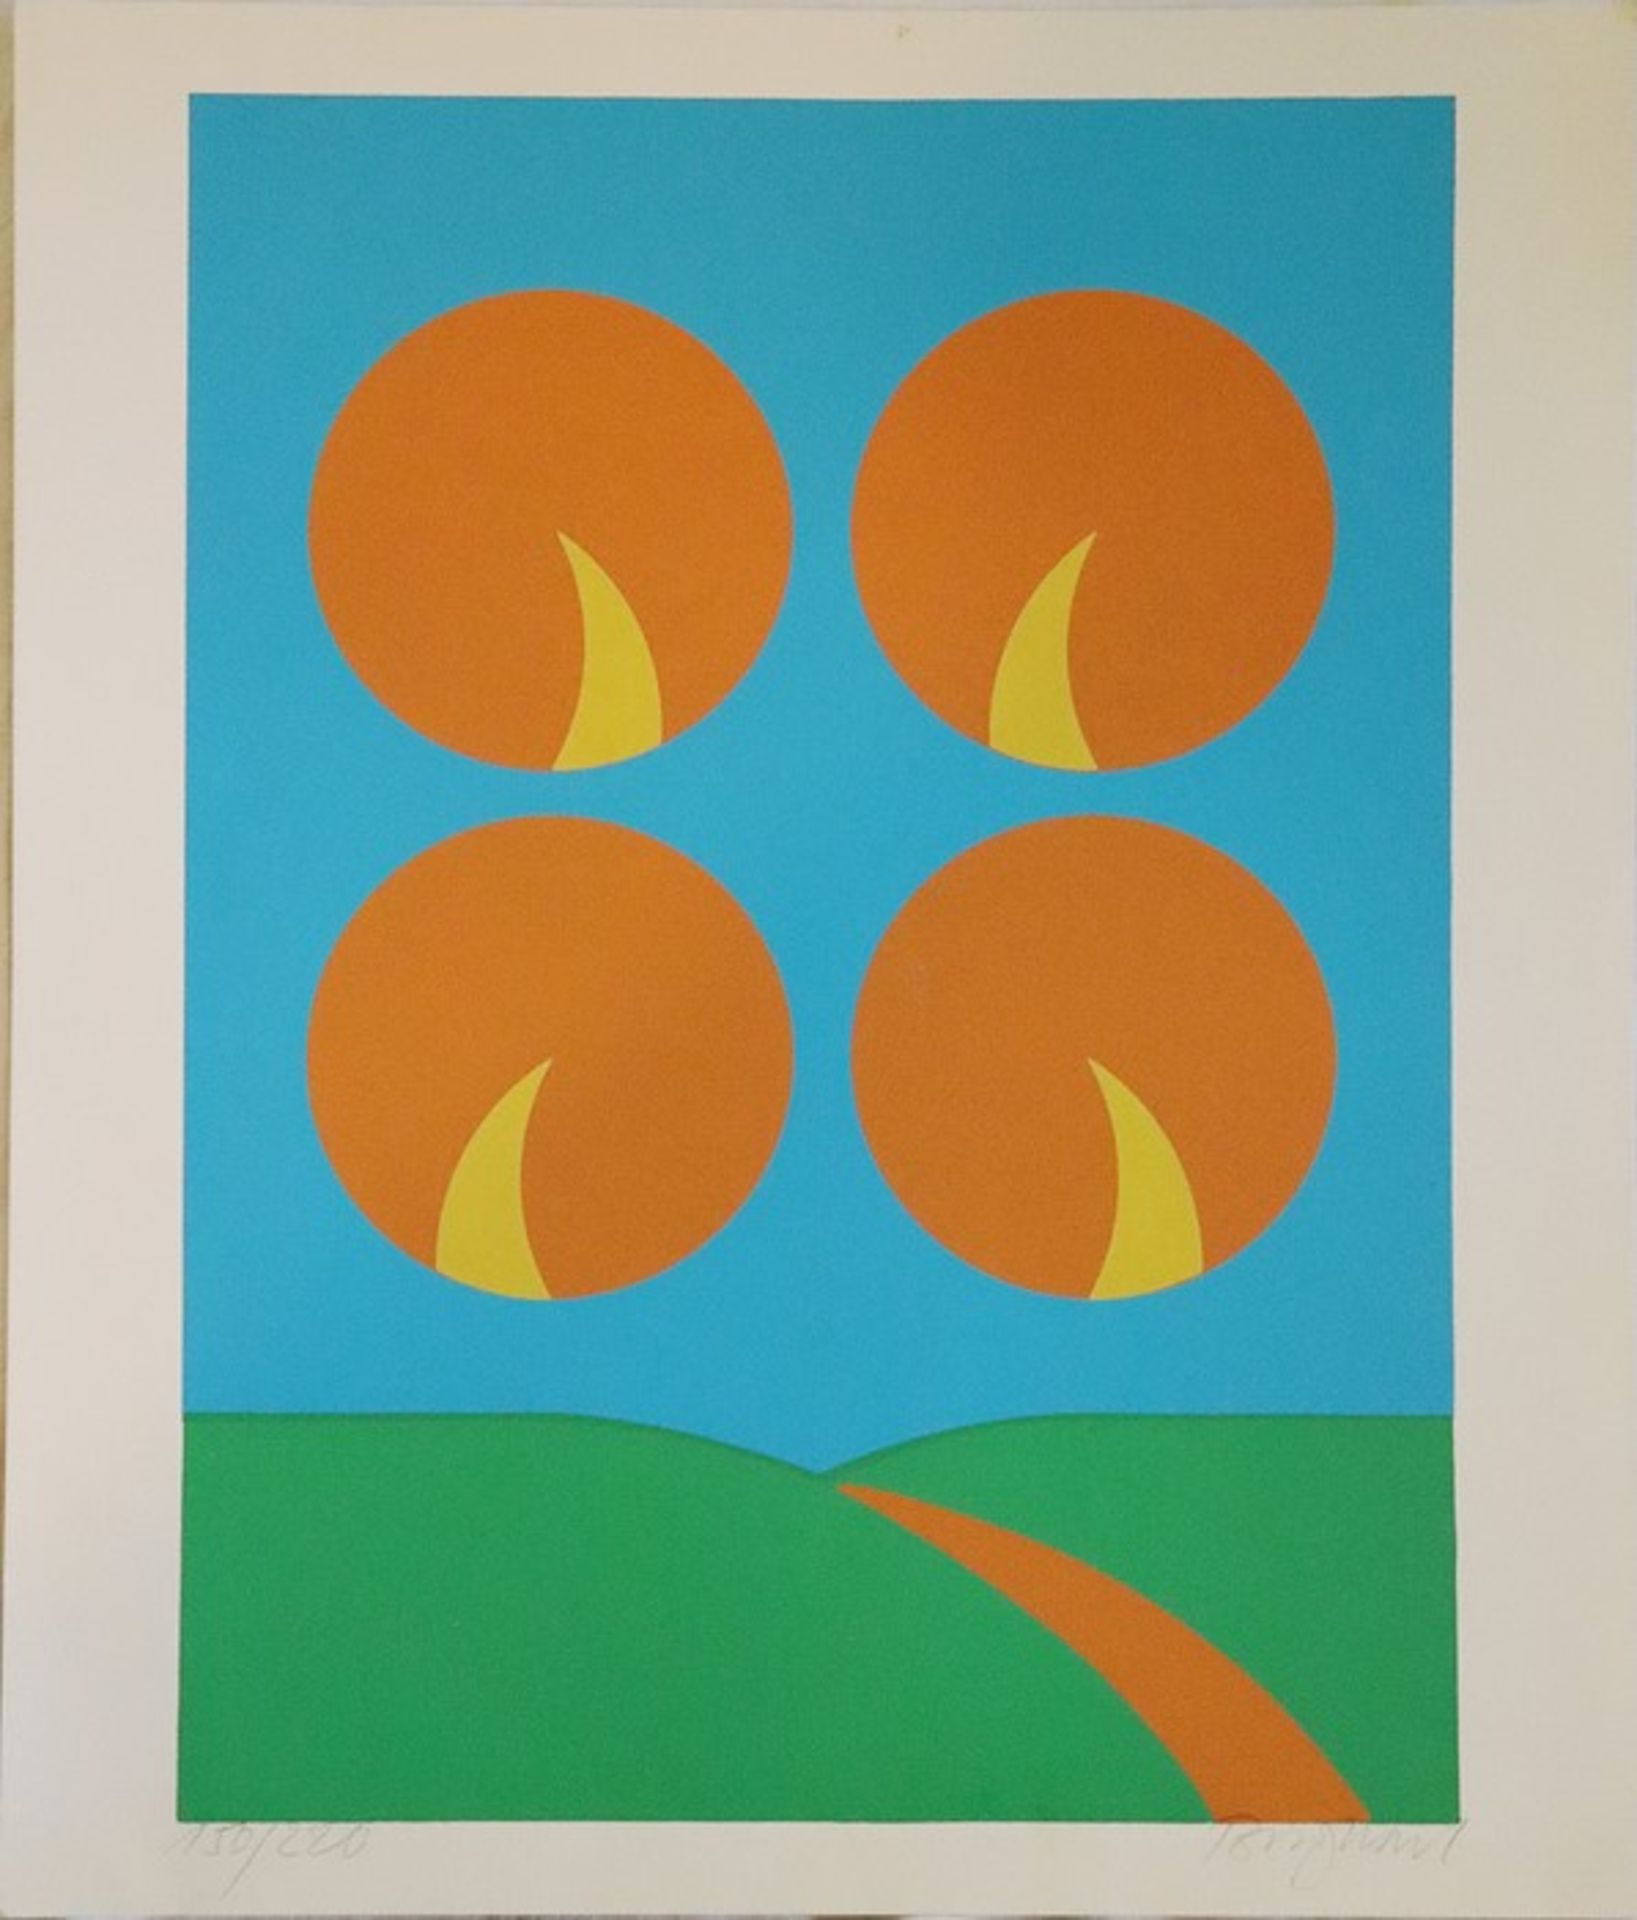 Burghart, Toni"Abstrahierte Landschaft mit 4 Sonnen", Farbserigrafie in Grün, Blau, Orange u.